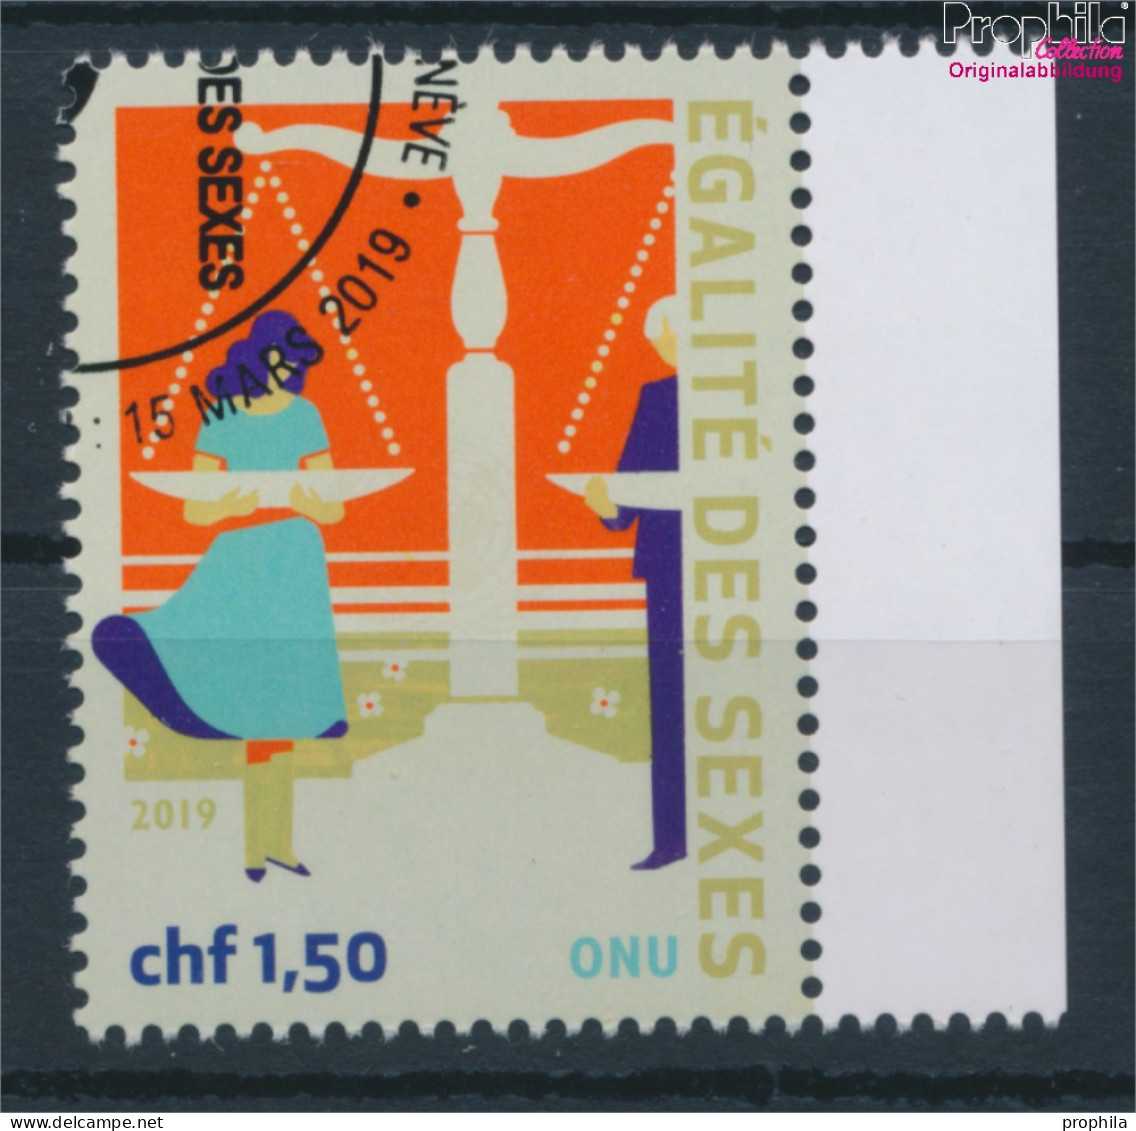 UNO - Genf 1073 (kompl.Ausg.) Gestempelt 2019 Geschlechtergleichstellung (10196696 - Used Stamps